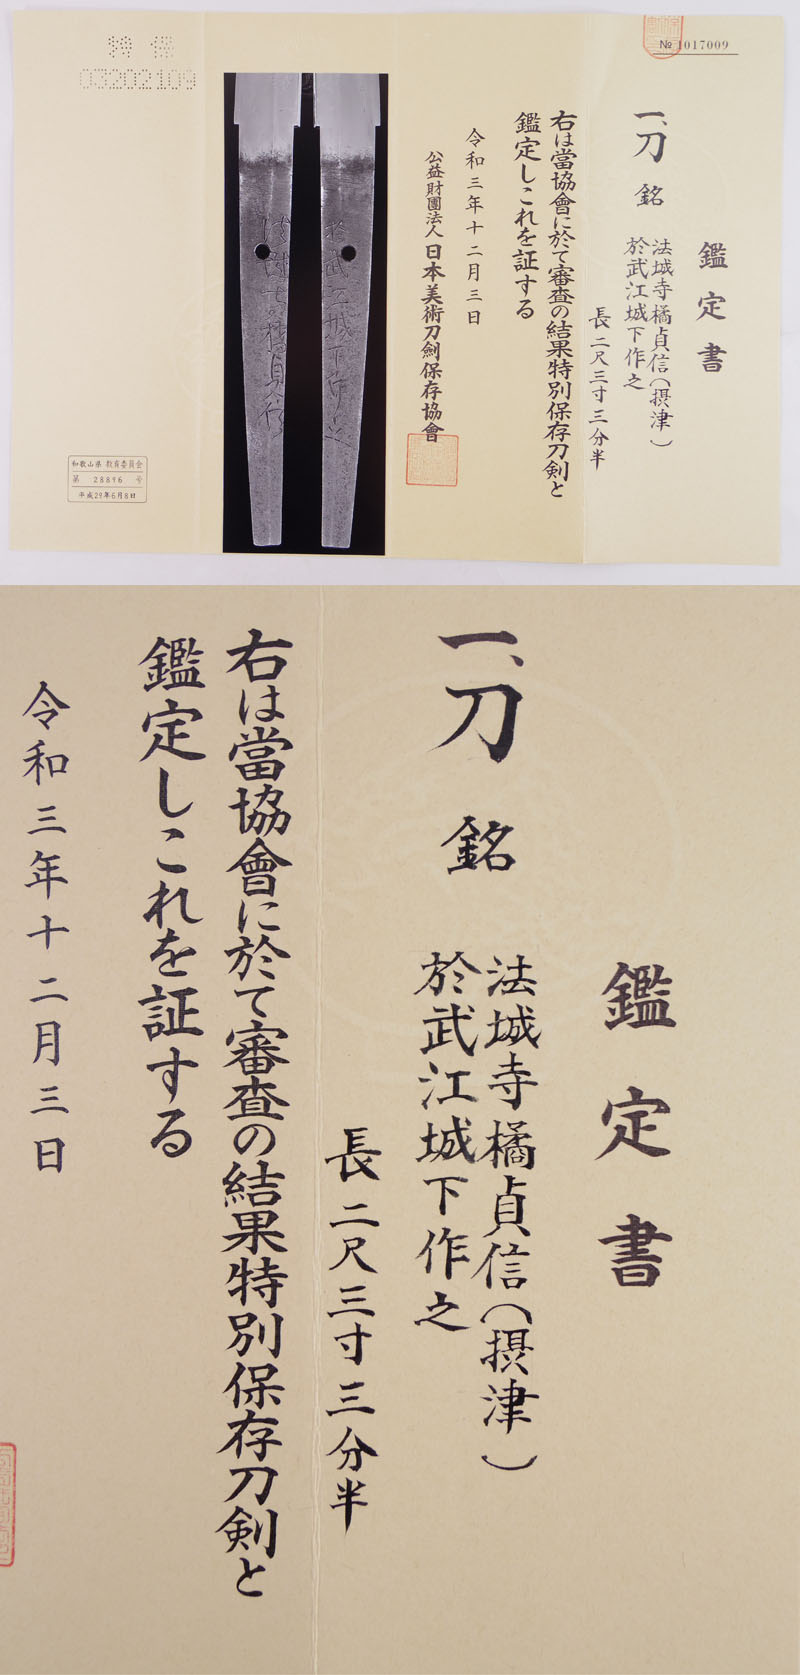 刀　法城寺橘貞信(摂津) (業物)　　於武江城下作之 Picture of Certificate